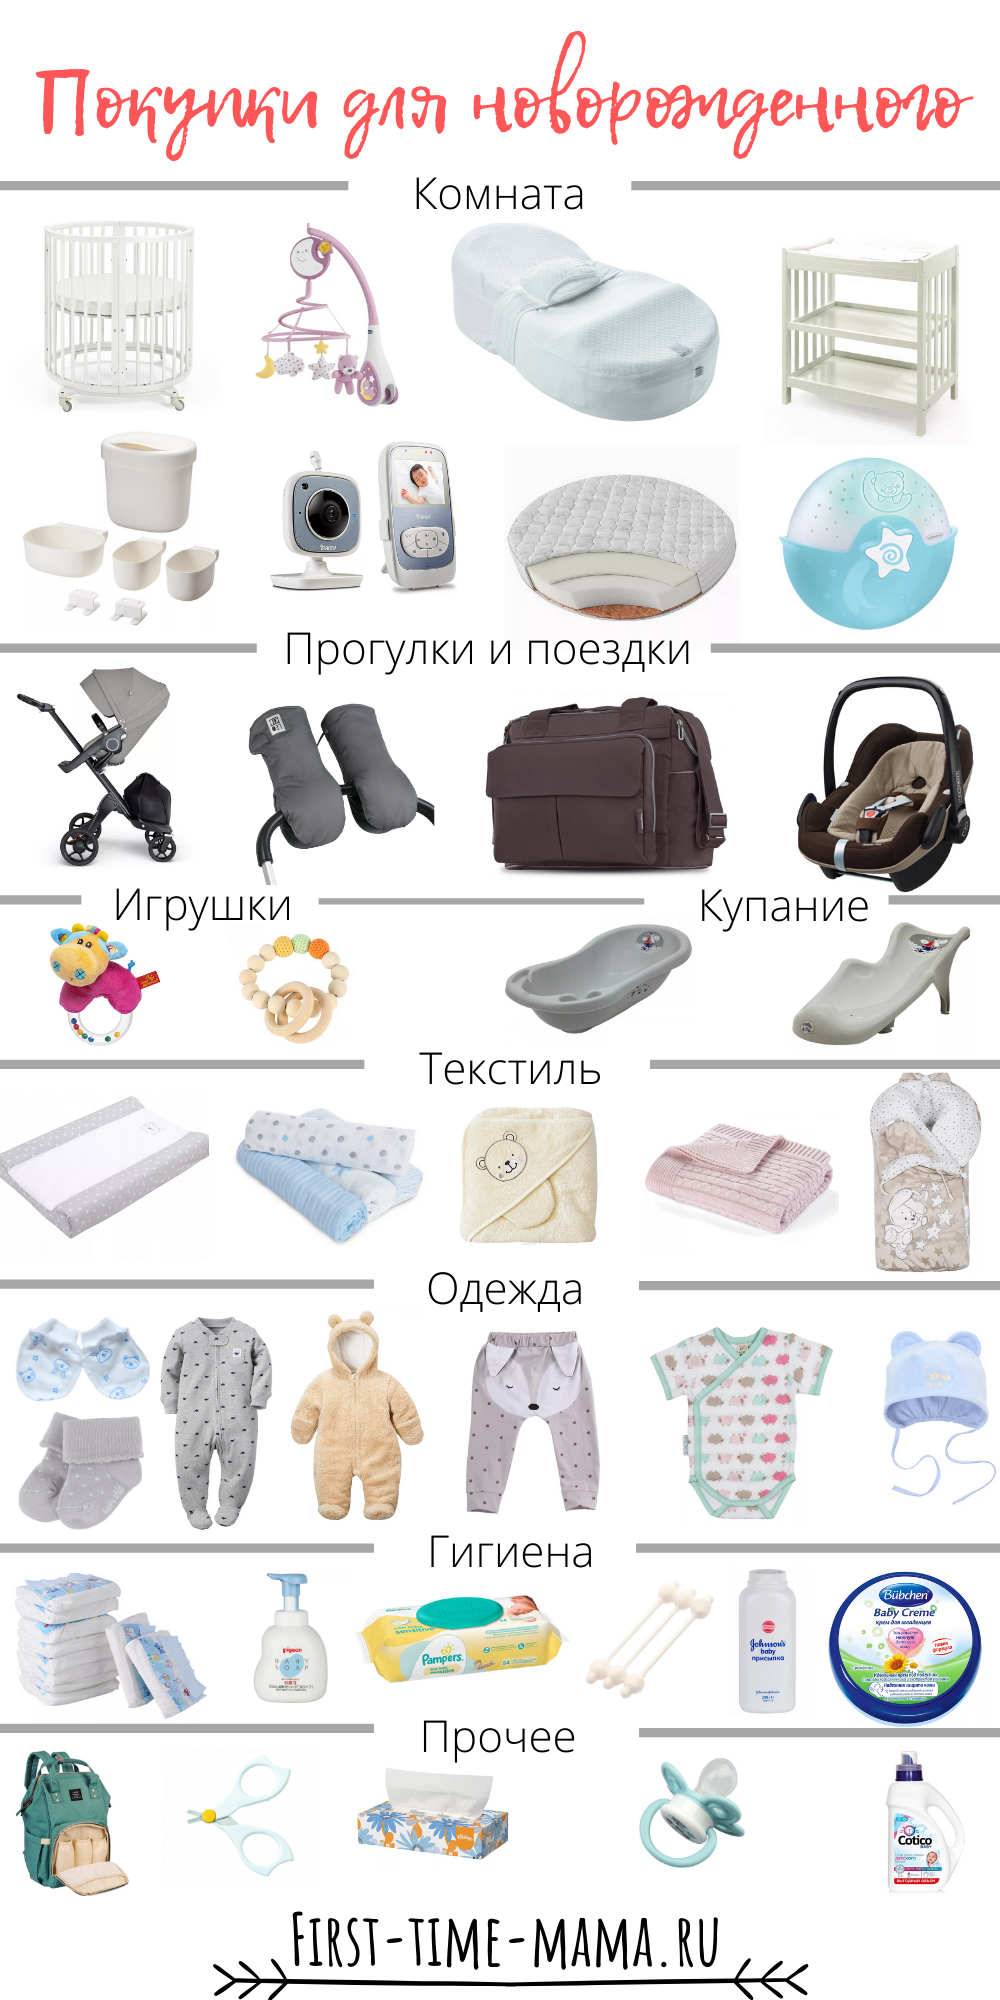 Что нужно новорожденному летом. Вещи первой необходимости для новорожденного после роддома. Одежда для новорожденного список необходимого. Список вещей для новорожденного. Список однждыдля новорожденного.